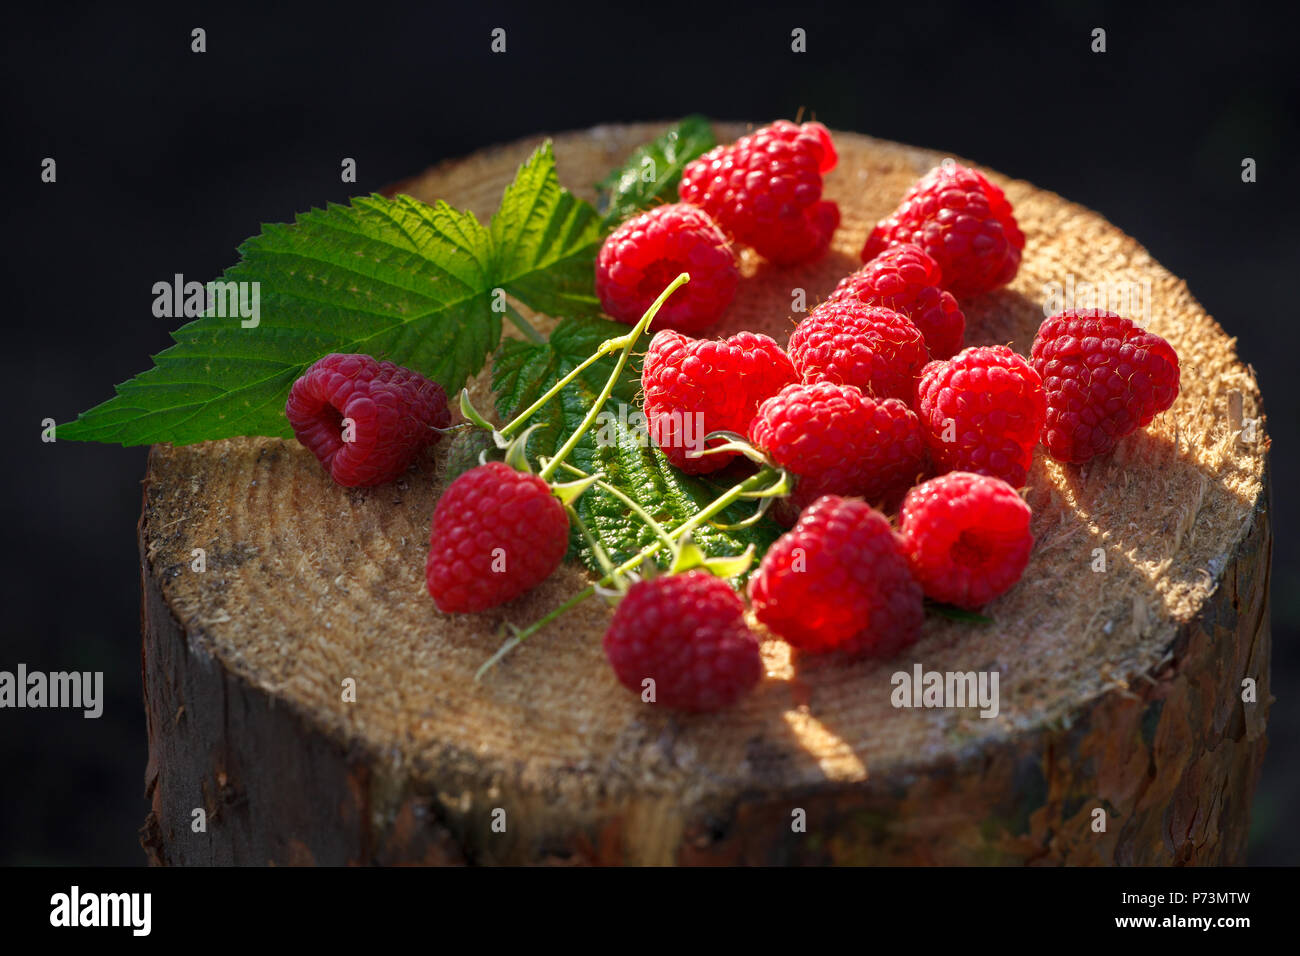 Les framboises rouges frais sur le moignon. Fruits frais biologiques. Close up. Banque D'Images